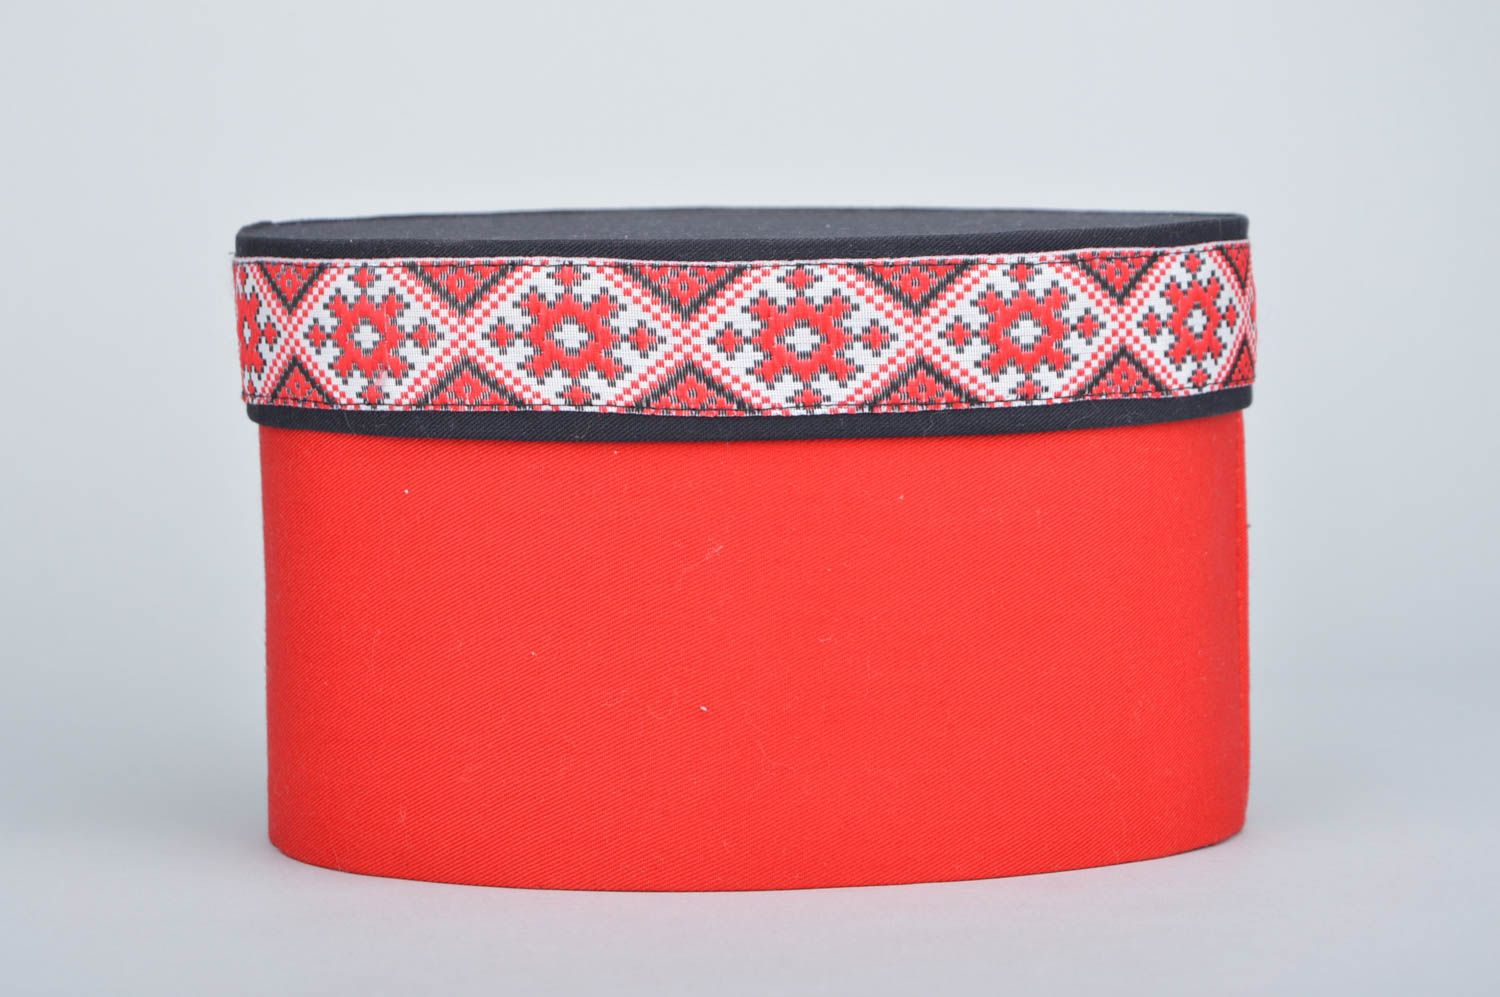 Caixinha revestida com tecido vermelha com padrões étnicos em forma oval  foto 2